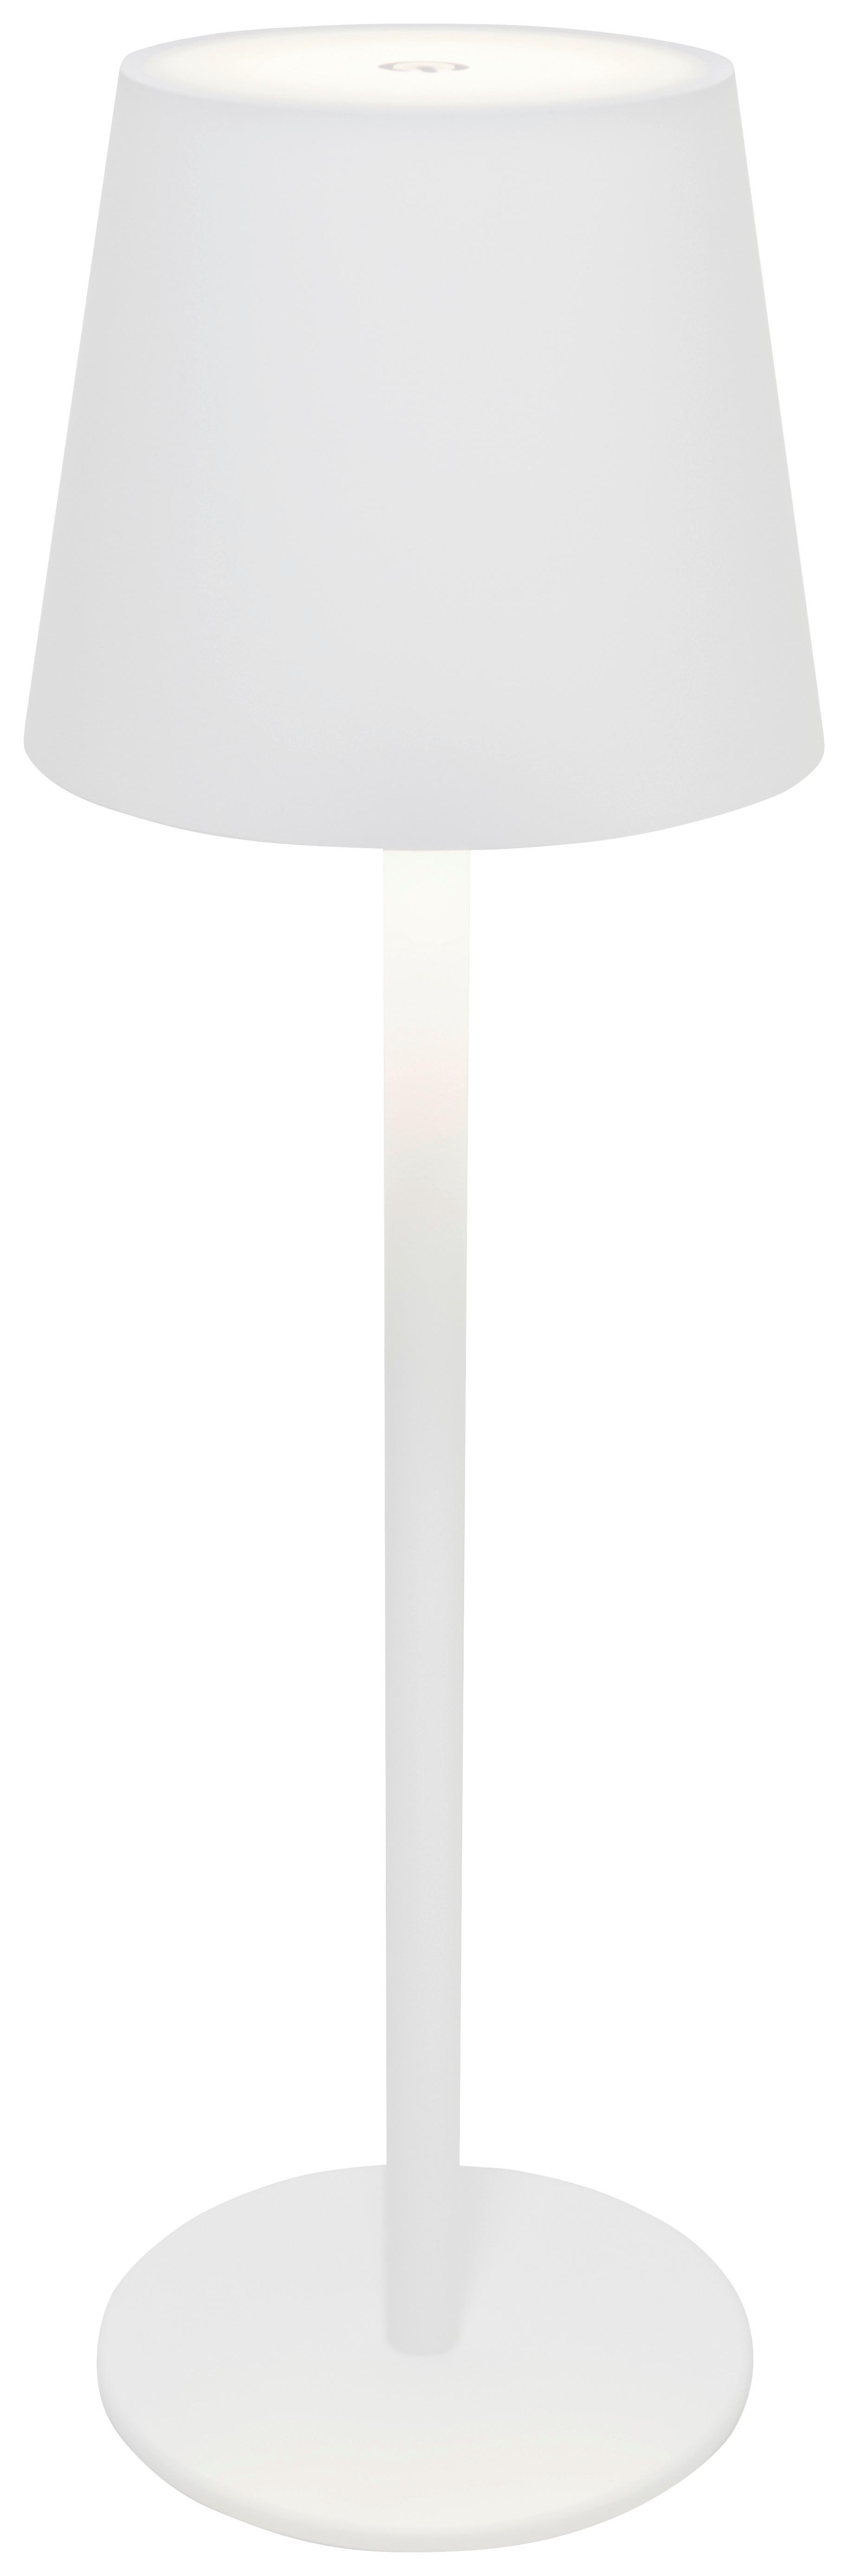 Asztali Lámpa Emily - fehér, Basics, műanyag/fém (11,5/36cm) - Luca Bessoni